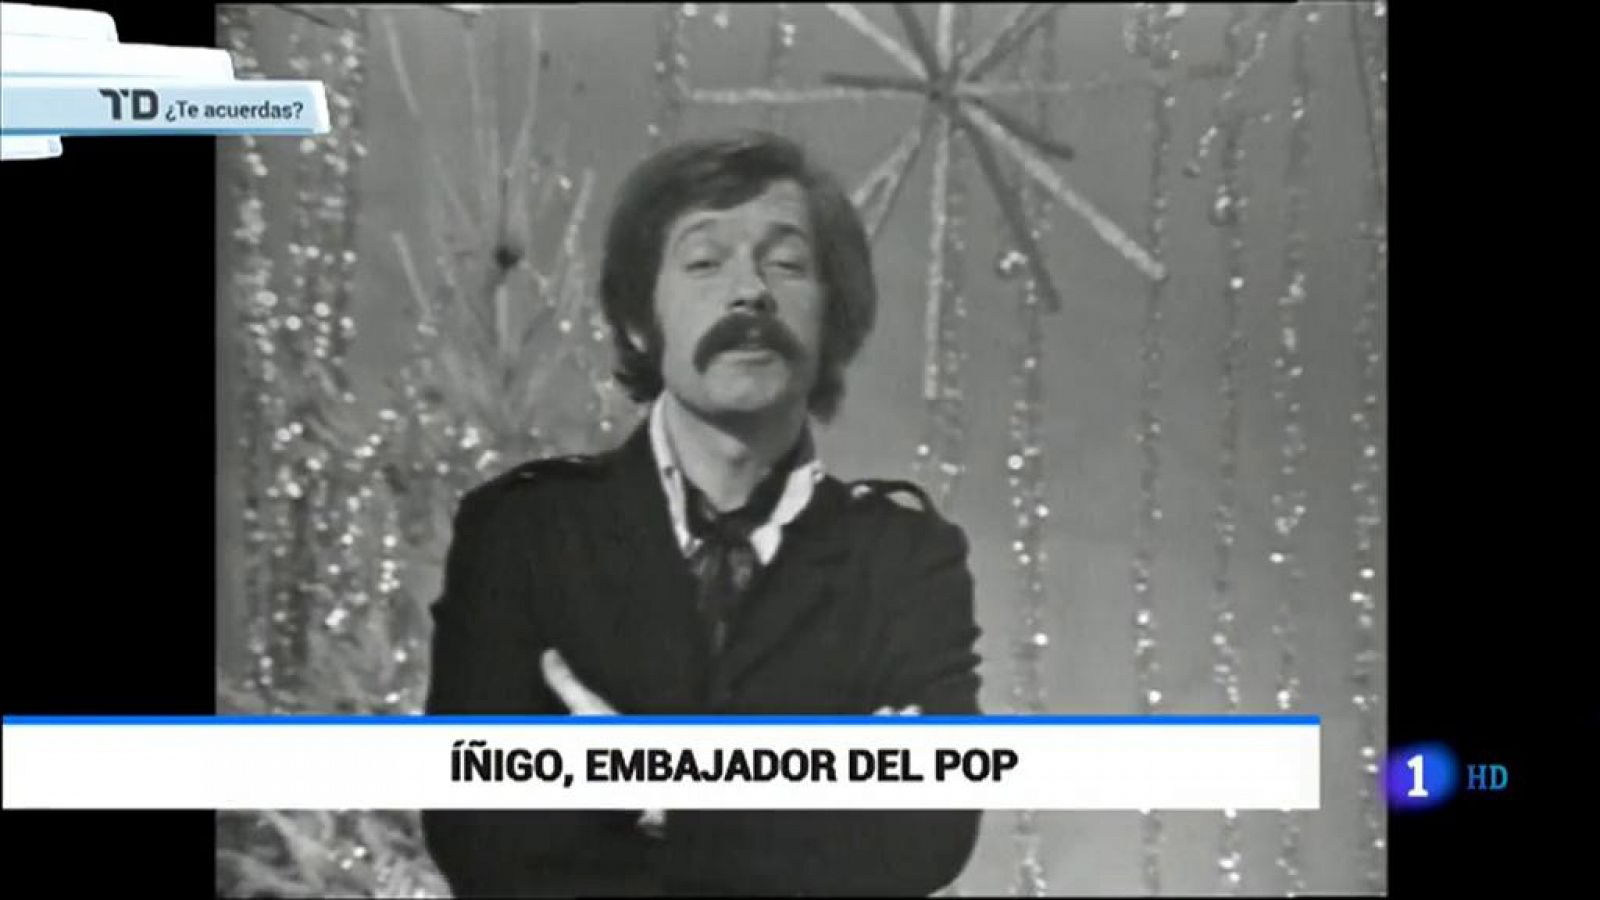 ¿Te acuerdas? - José María Íñigo, embajador del pop